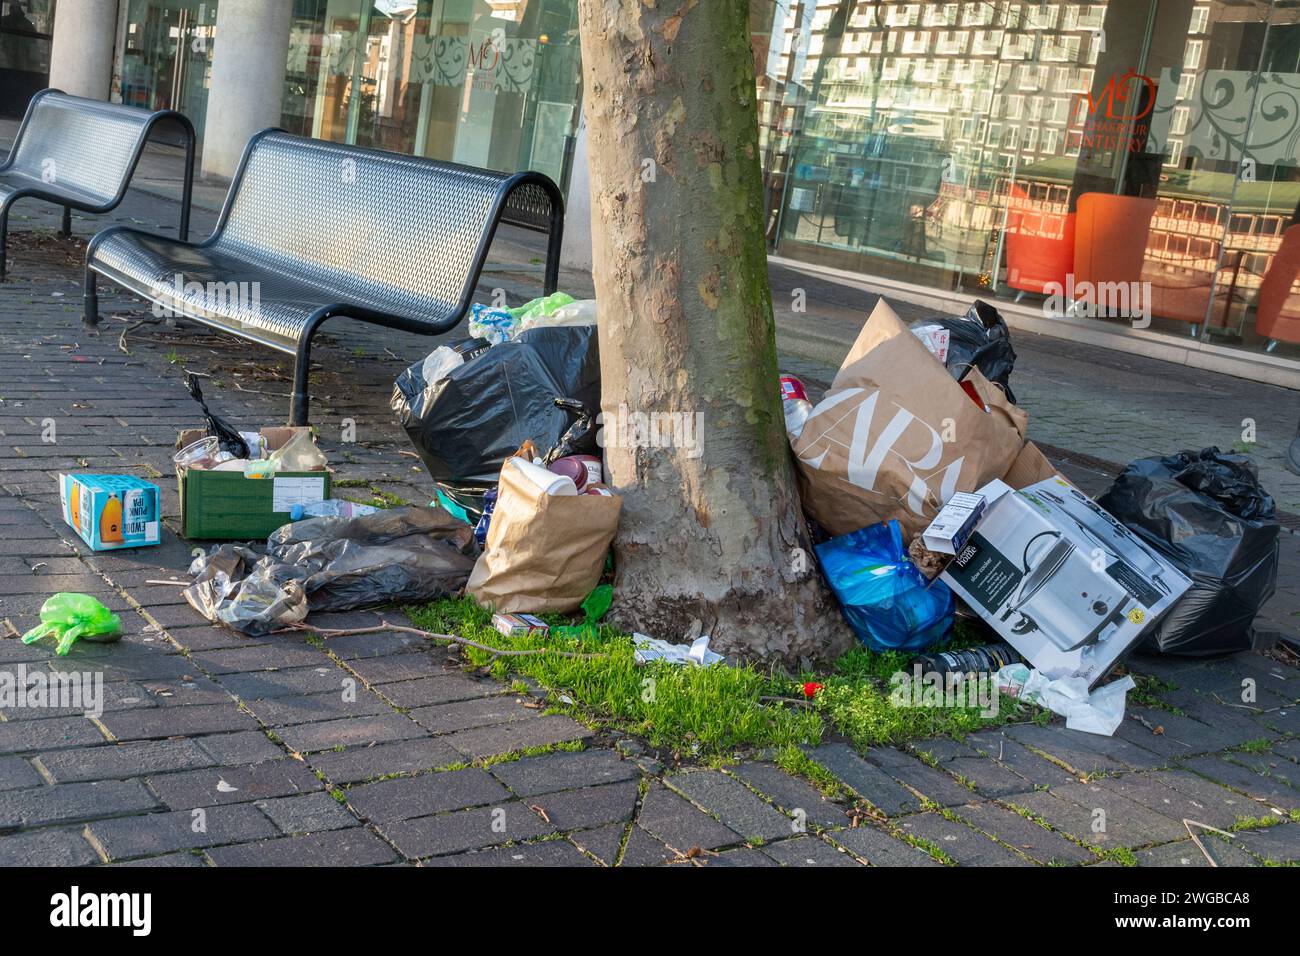 Sacs d'ordures s'empilant dans la rue, vue urbaine des ordures, déchets, déchets Banque D'Images